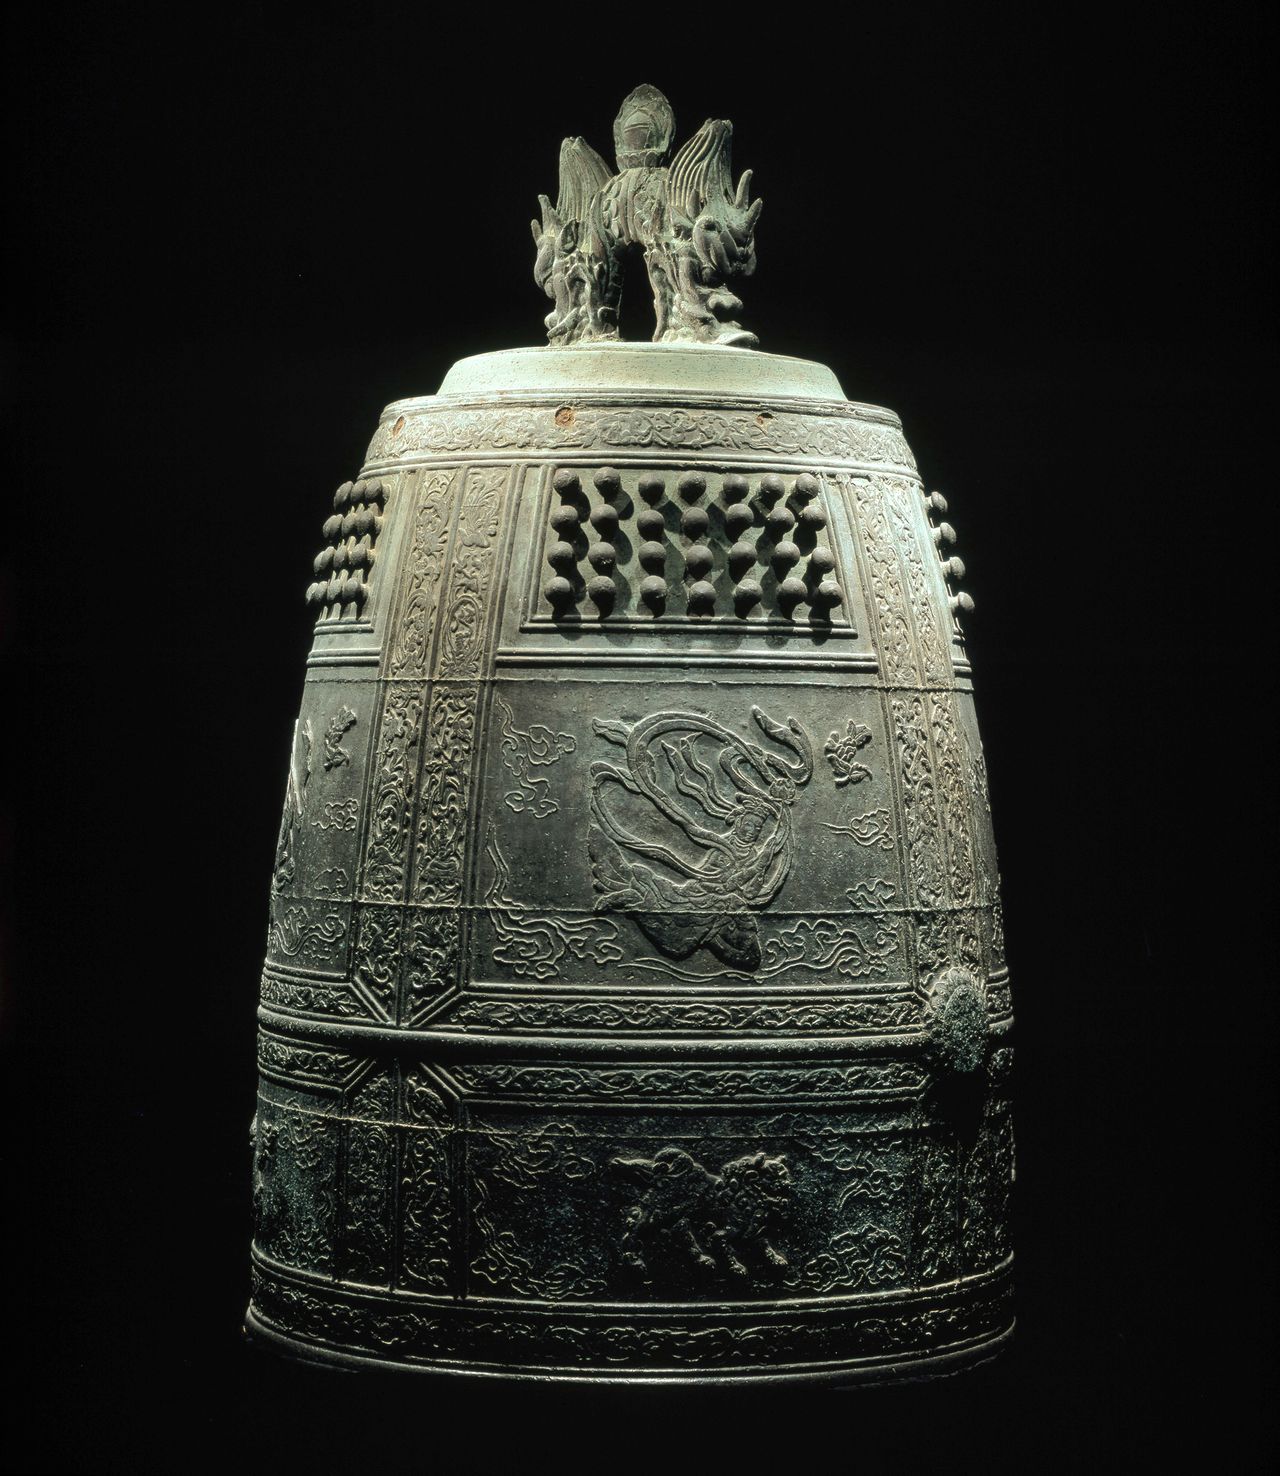 La primera campana (tesoro nacional) se encuentra exhibida en el museo. Tiene una altura de 199 cm, un diámetro de 123 cm y pesa casi dos toneladas. (Fotografía: Byōdōin)